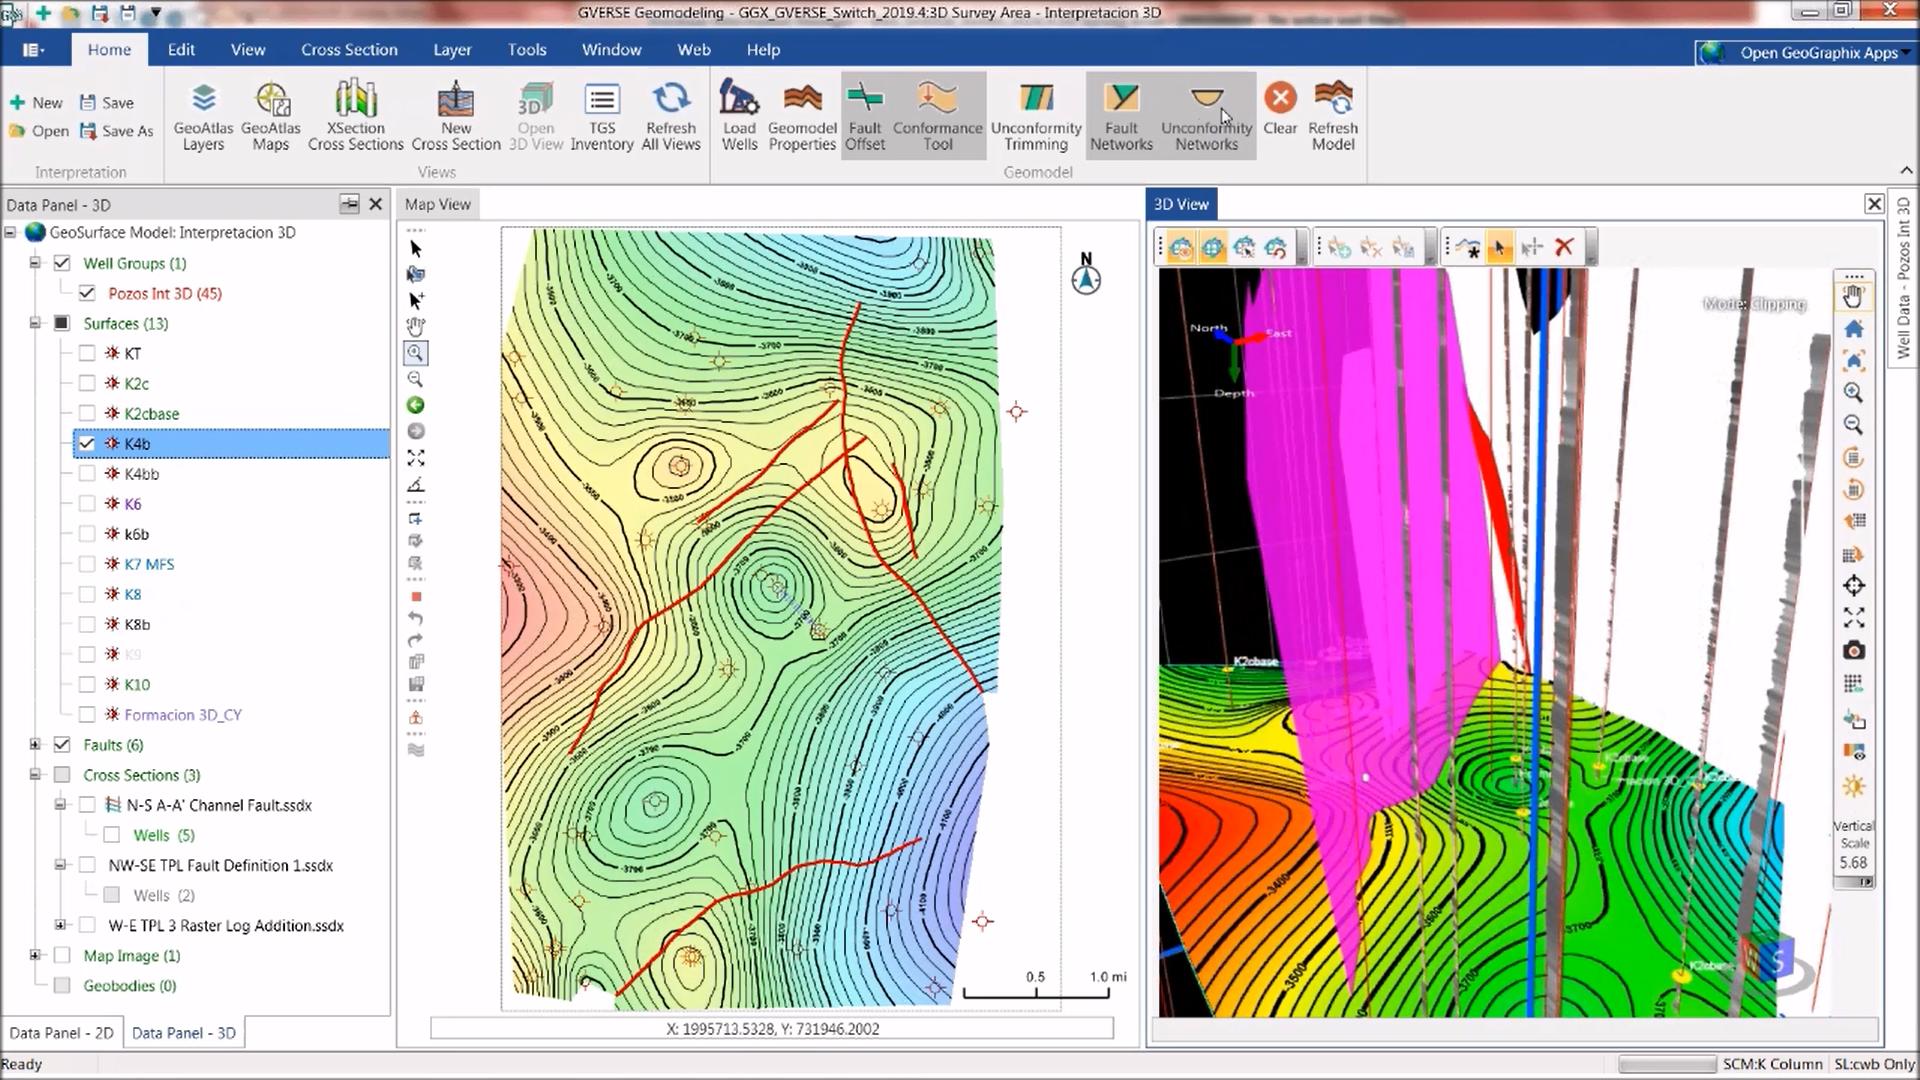 Como hacer Interpretación Geológica en 3D utilizando GVERSE Geomodeling 2019.4